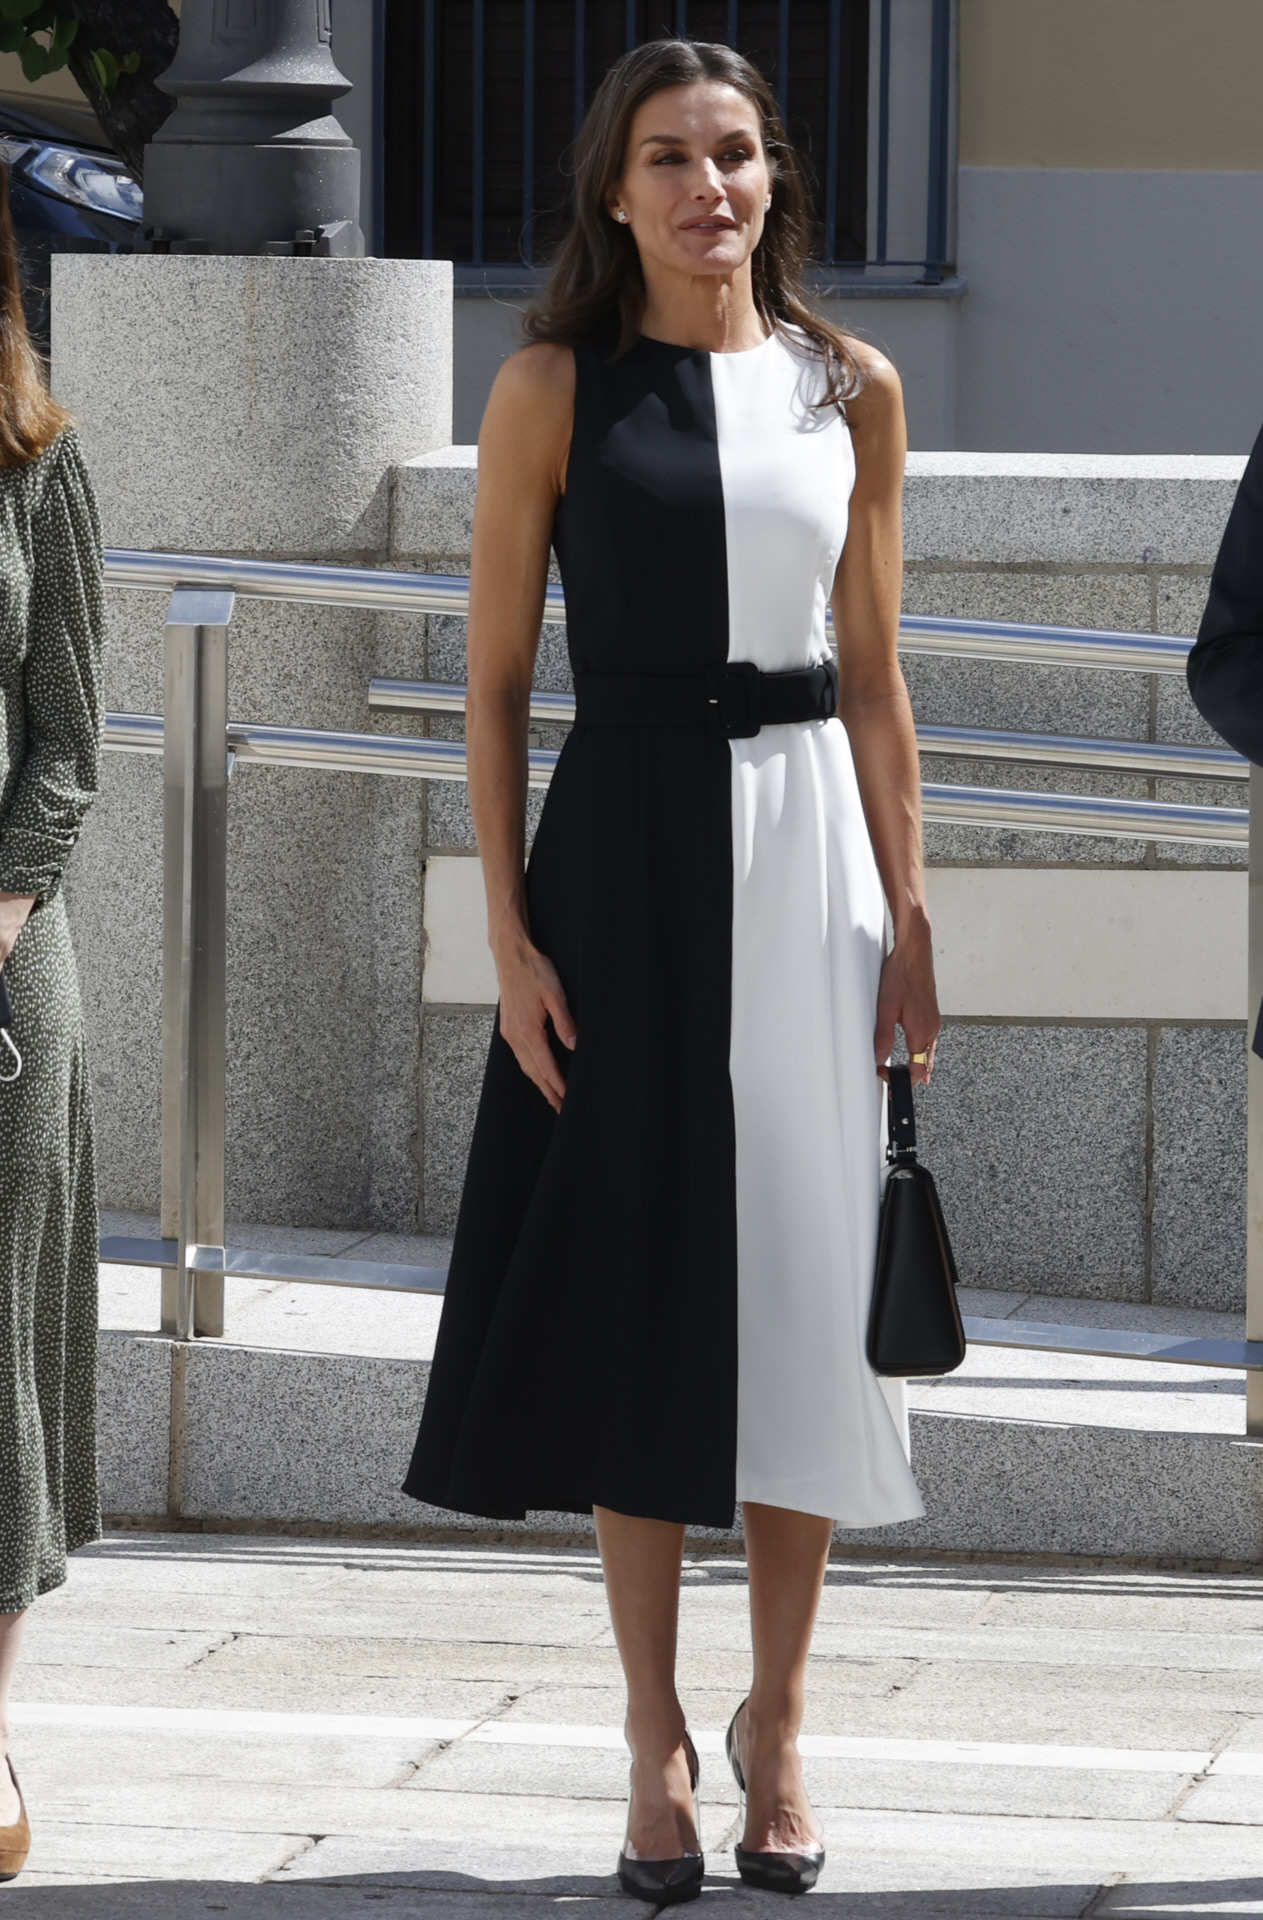 ayudante perdí mi camino Perfecto La reina Letizia estrena el vestido blanco y negro de Mango más elegante |  Telva.com